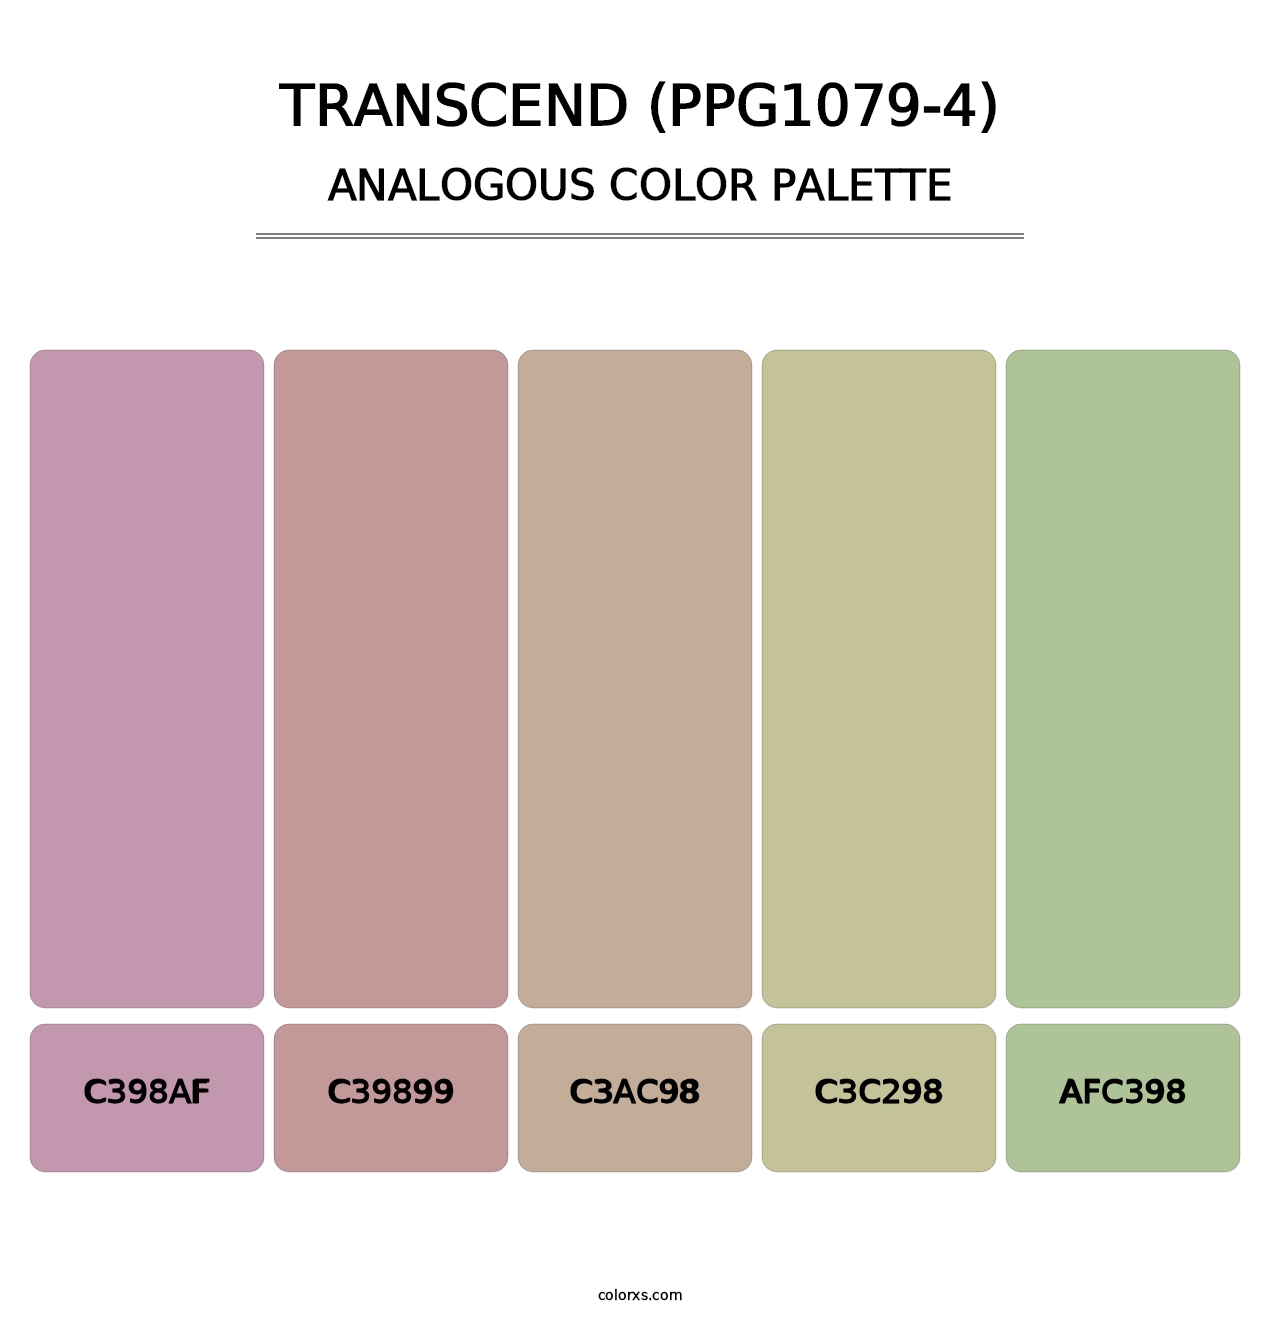 Transcend (PPG1079-4) - Analogous Color Palette